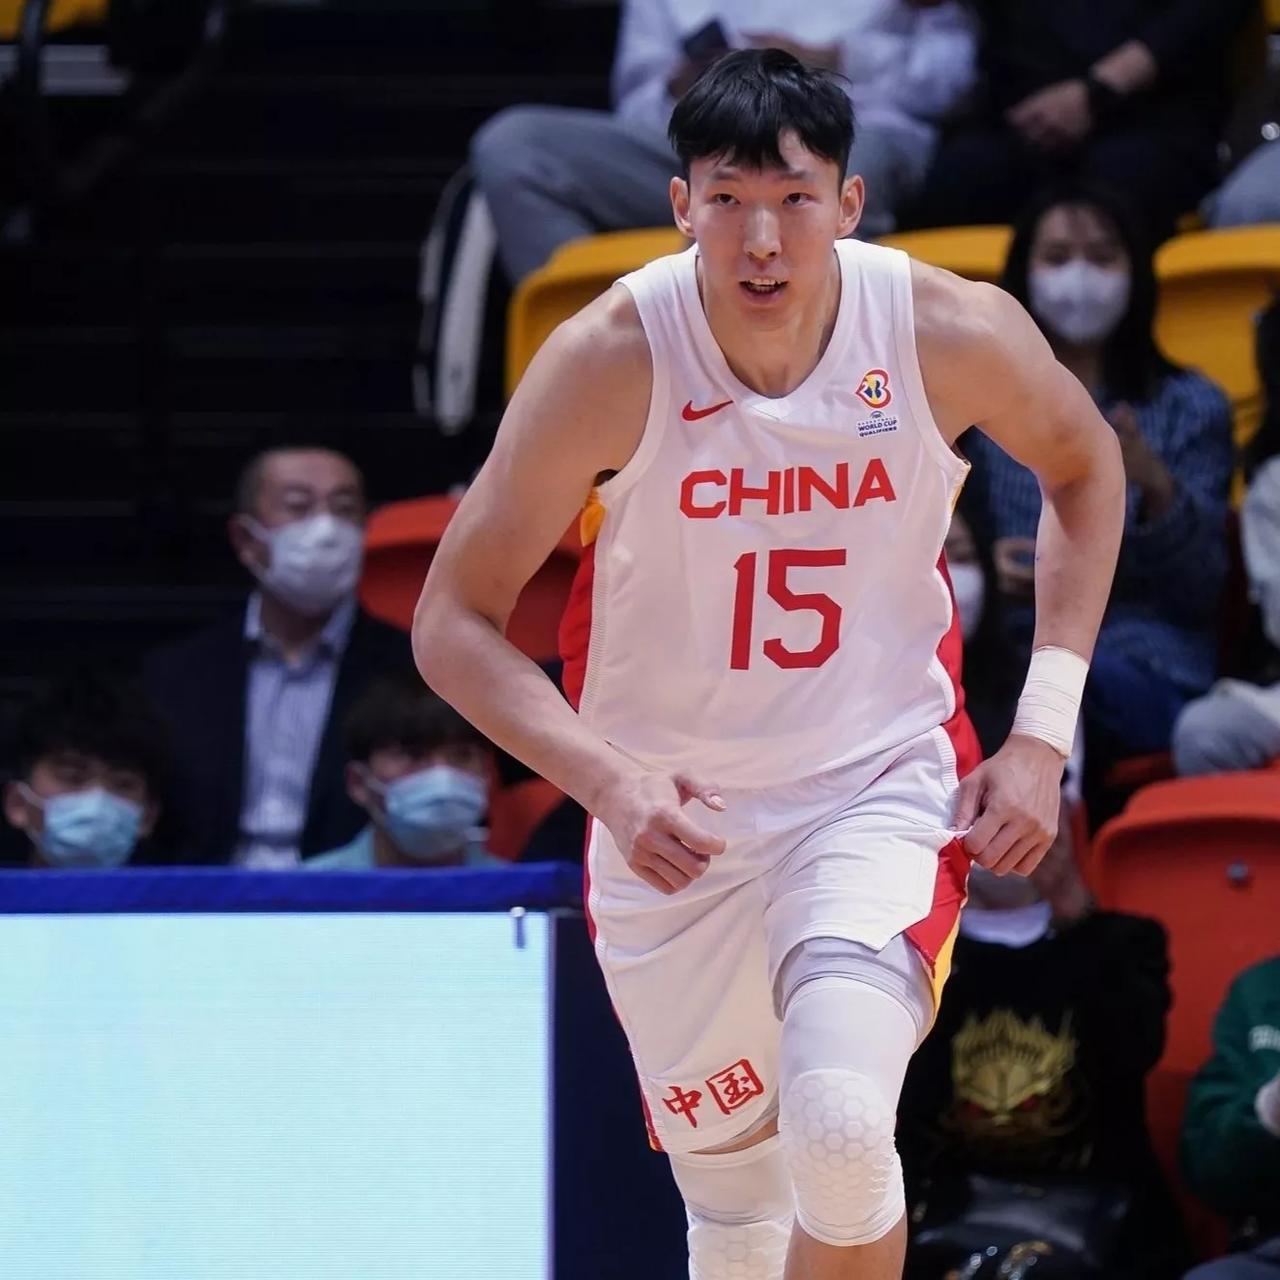 中国男篮世界杯会取得怎样的战绩……

1.3胜0负
2.2胜1负
3.1胜2负
(1)